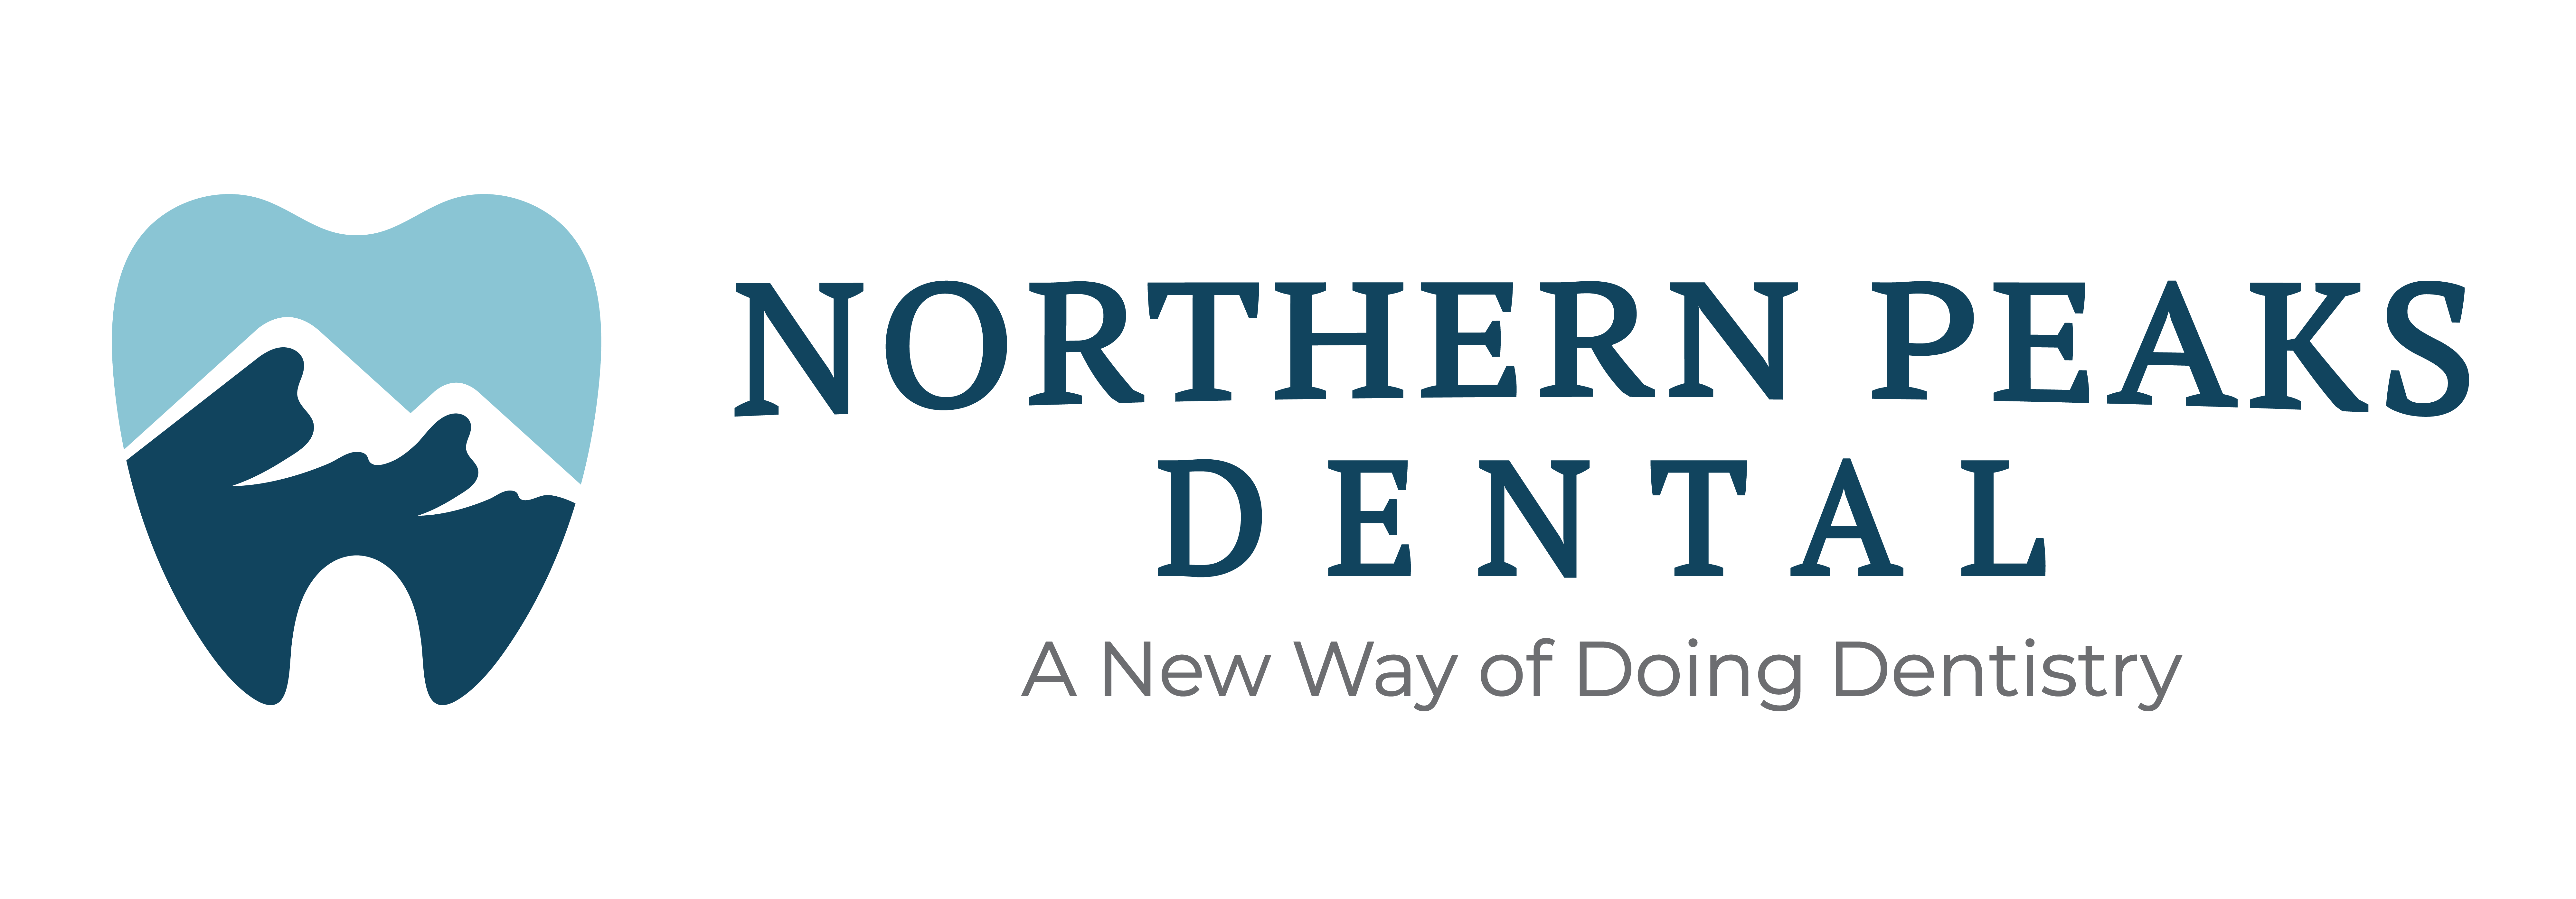 NorthernPeaksDental_logo_extended_tagline_color